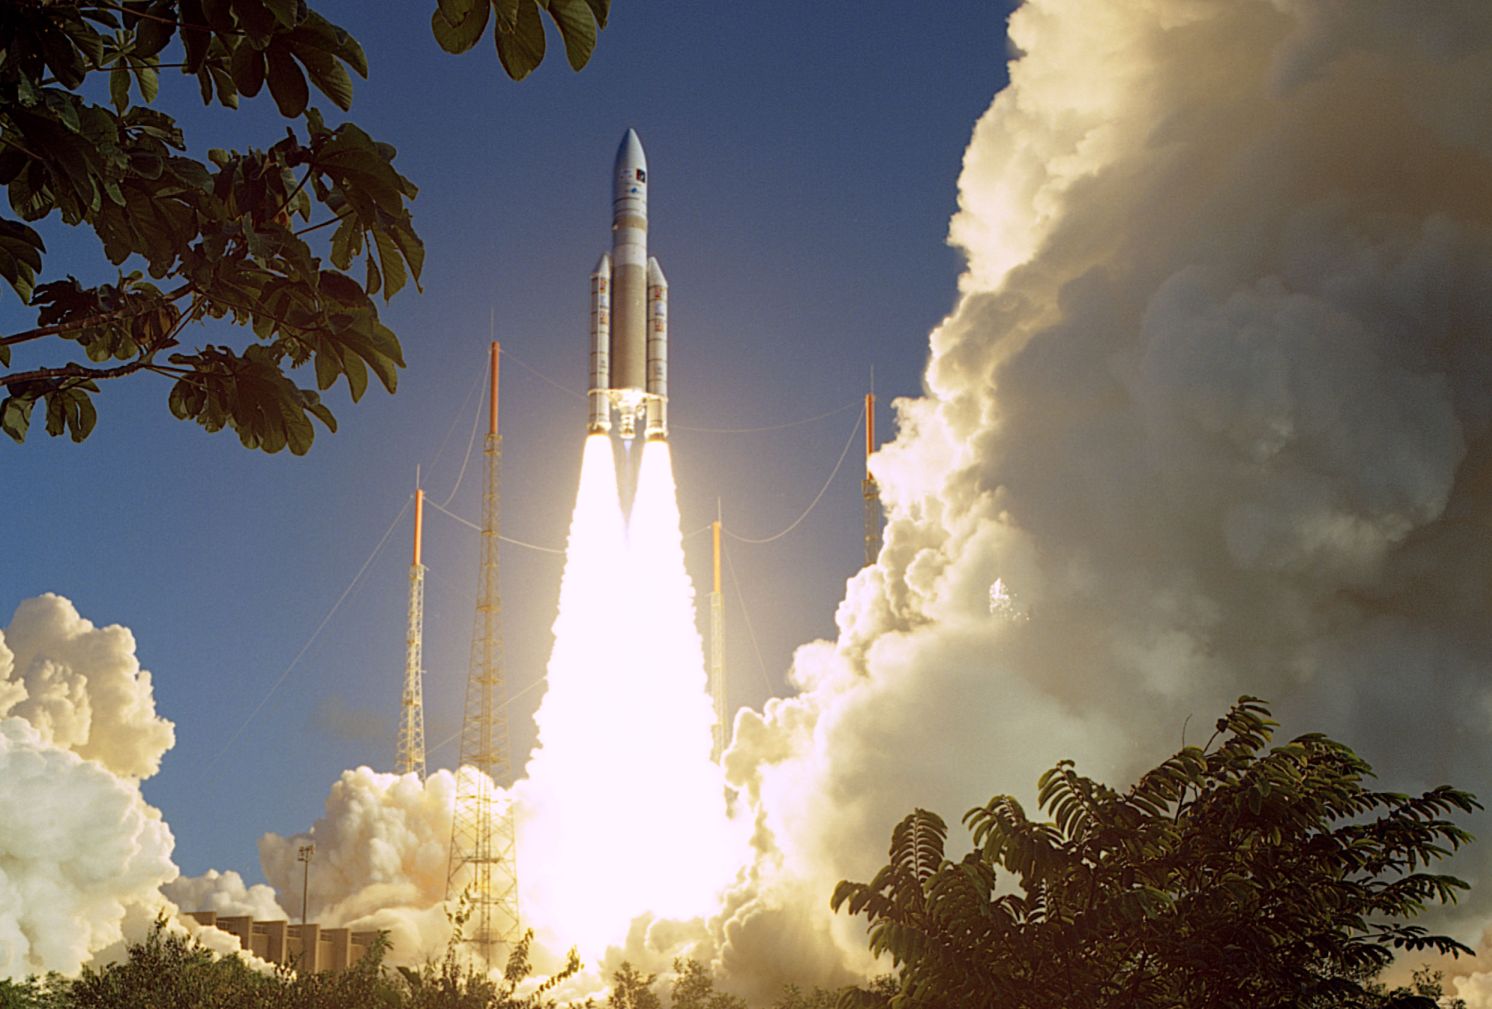 Új szerkezetben kell folytatni az Ariane-programot is